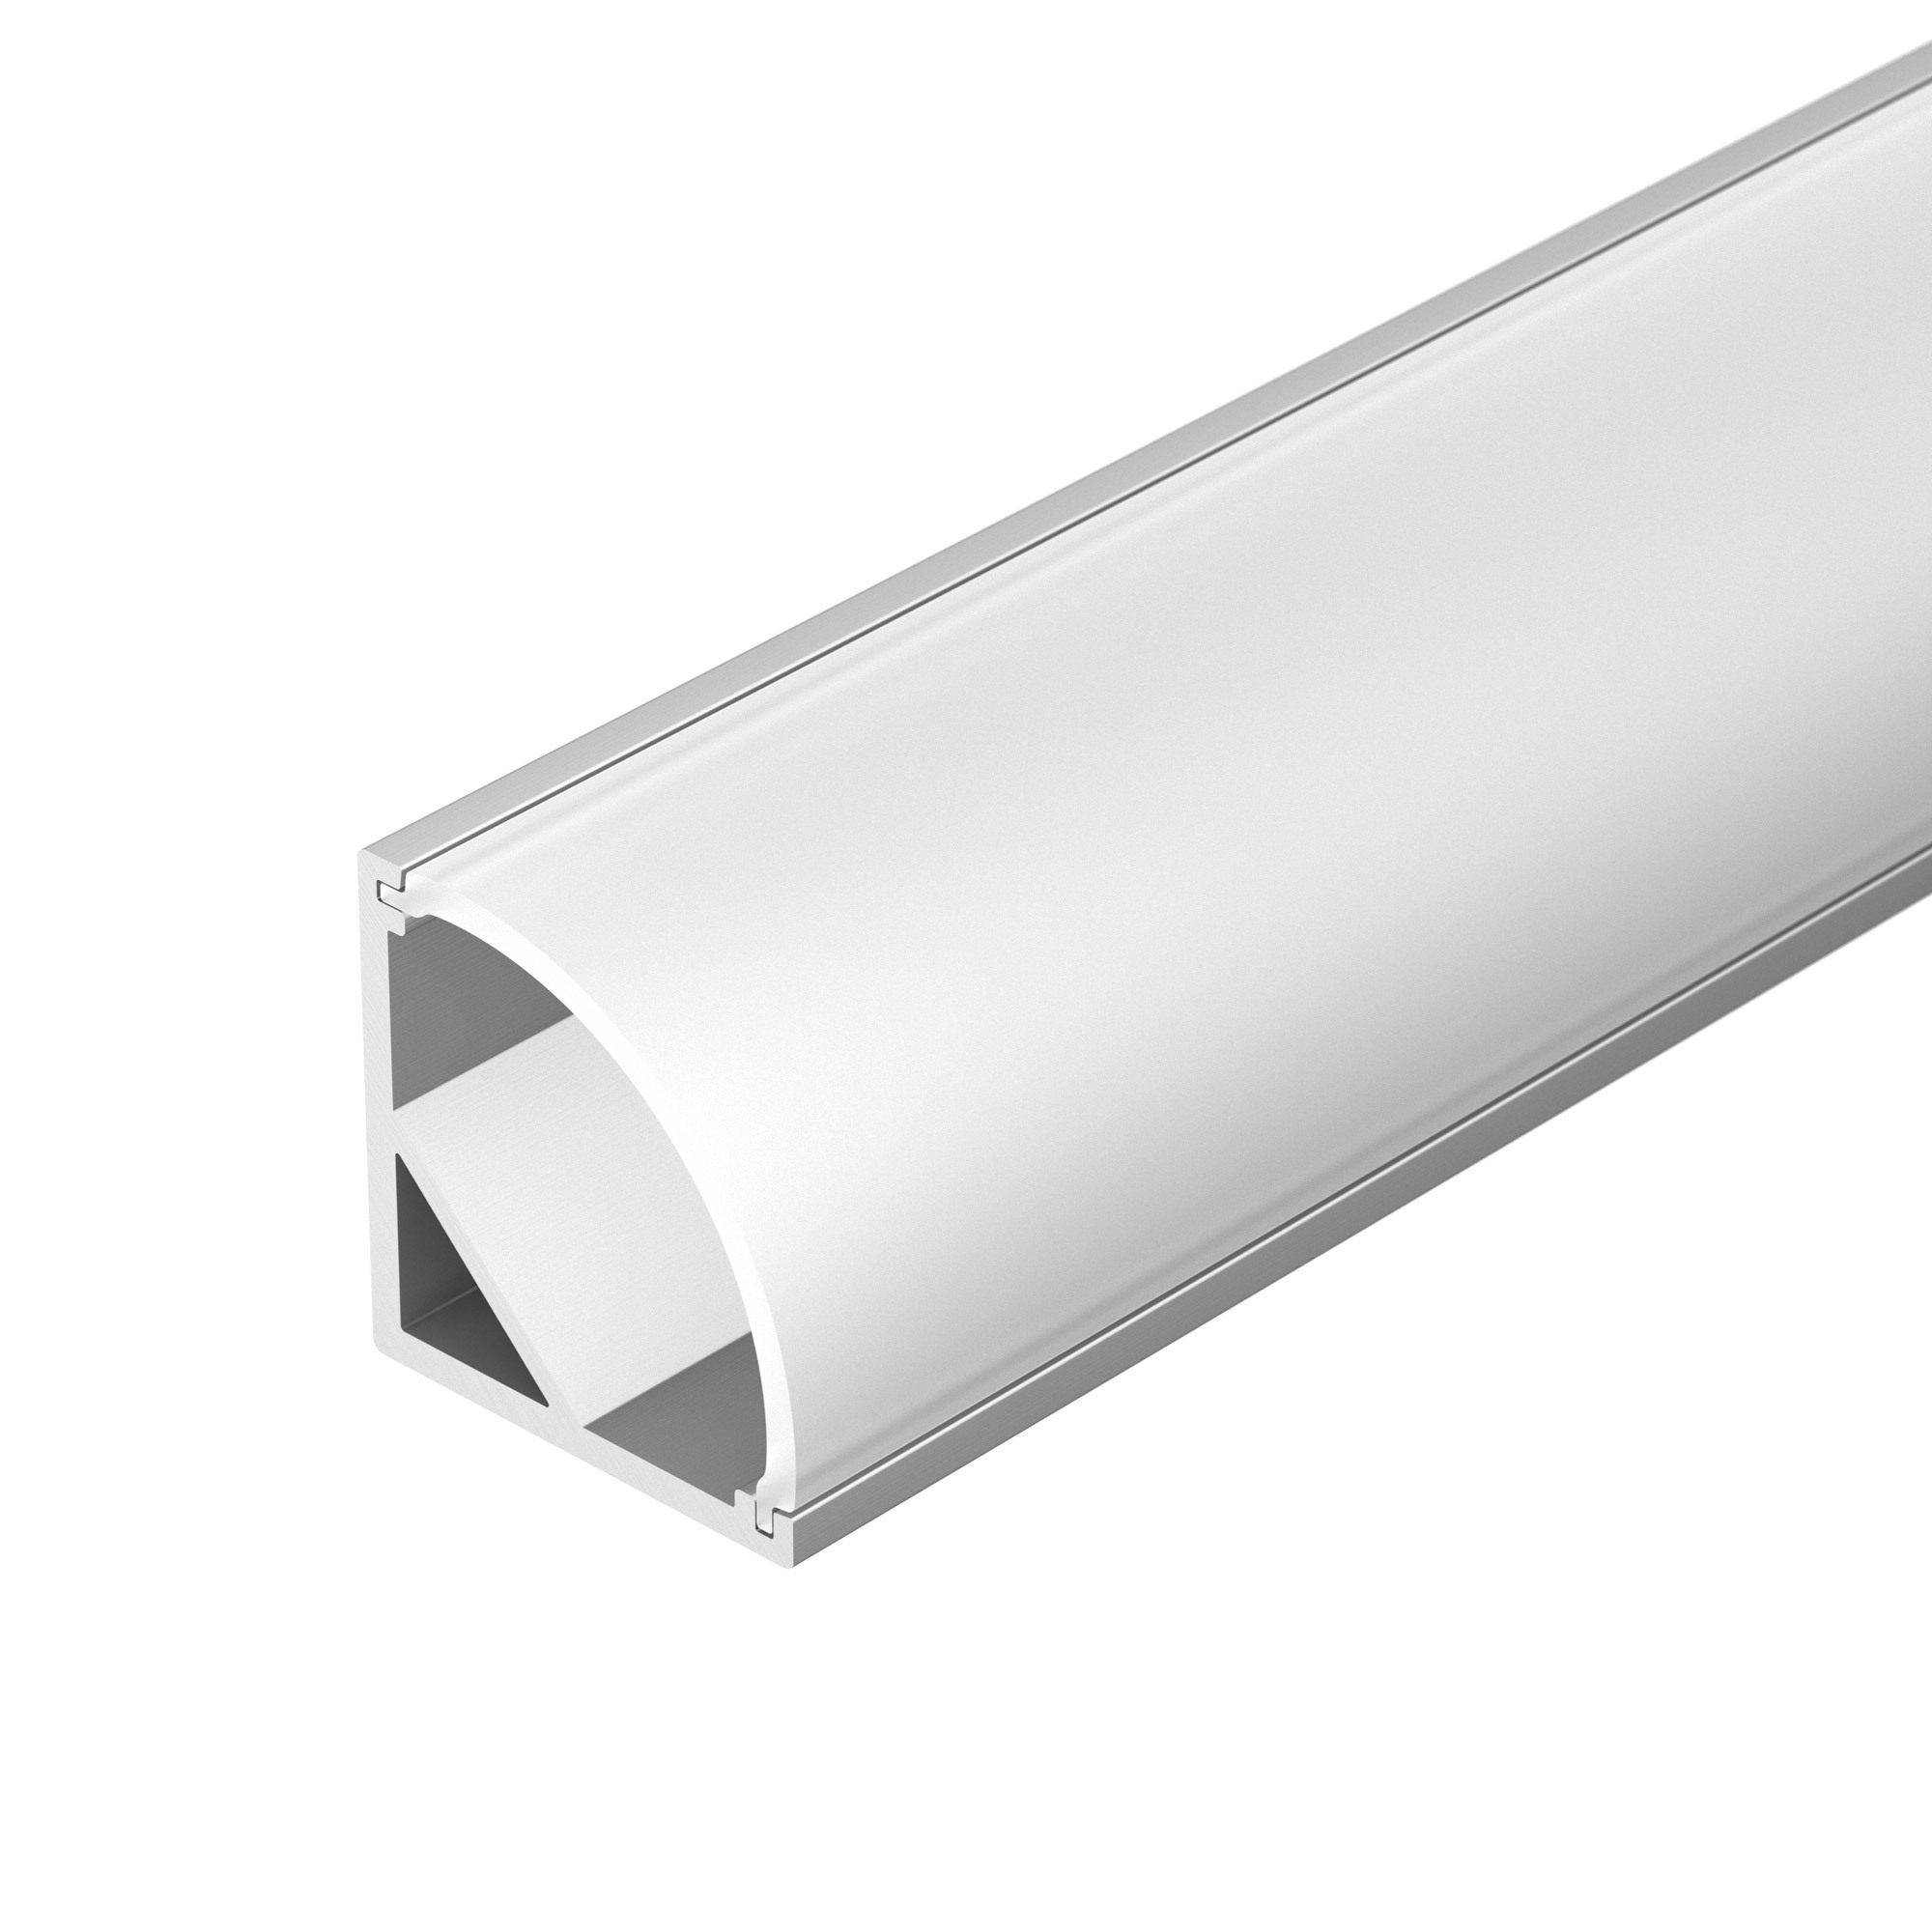 Профиль ARH-KANT-H16-2000 ANOD (Arlight, Алюминий) профиль для светодиодной ленты врезной алюминиевый lc lpv 0722 2 anod